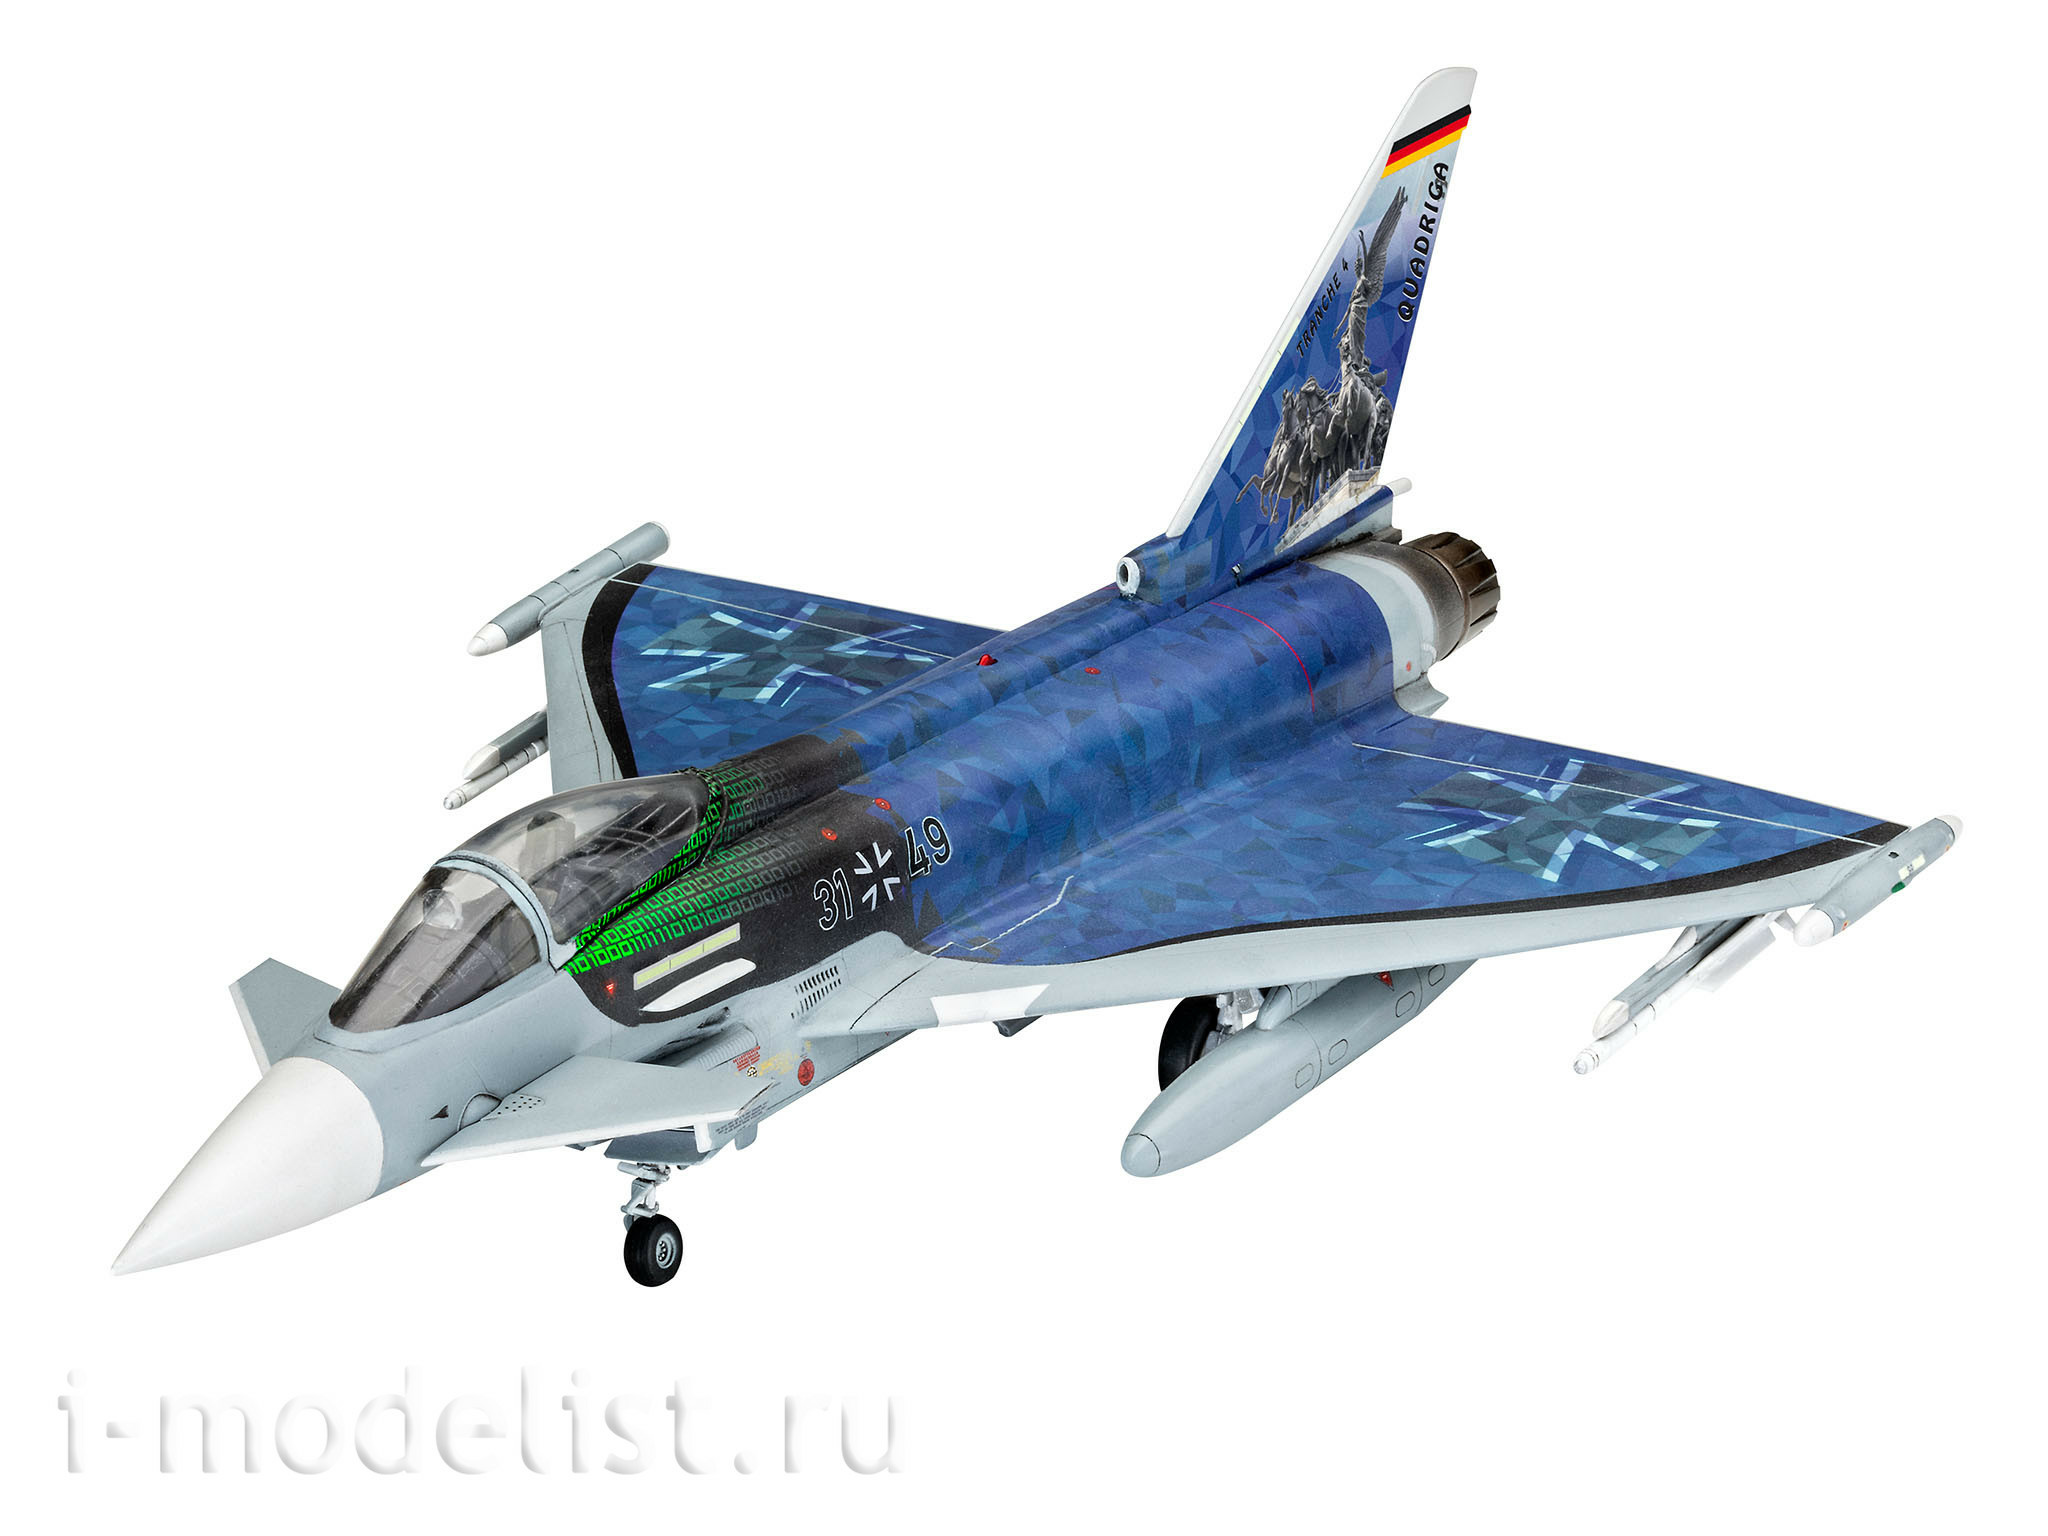 03843 Revell 1/72 Eurofighter 